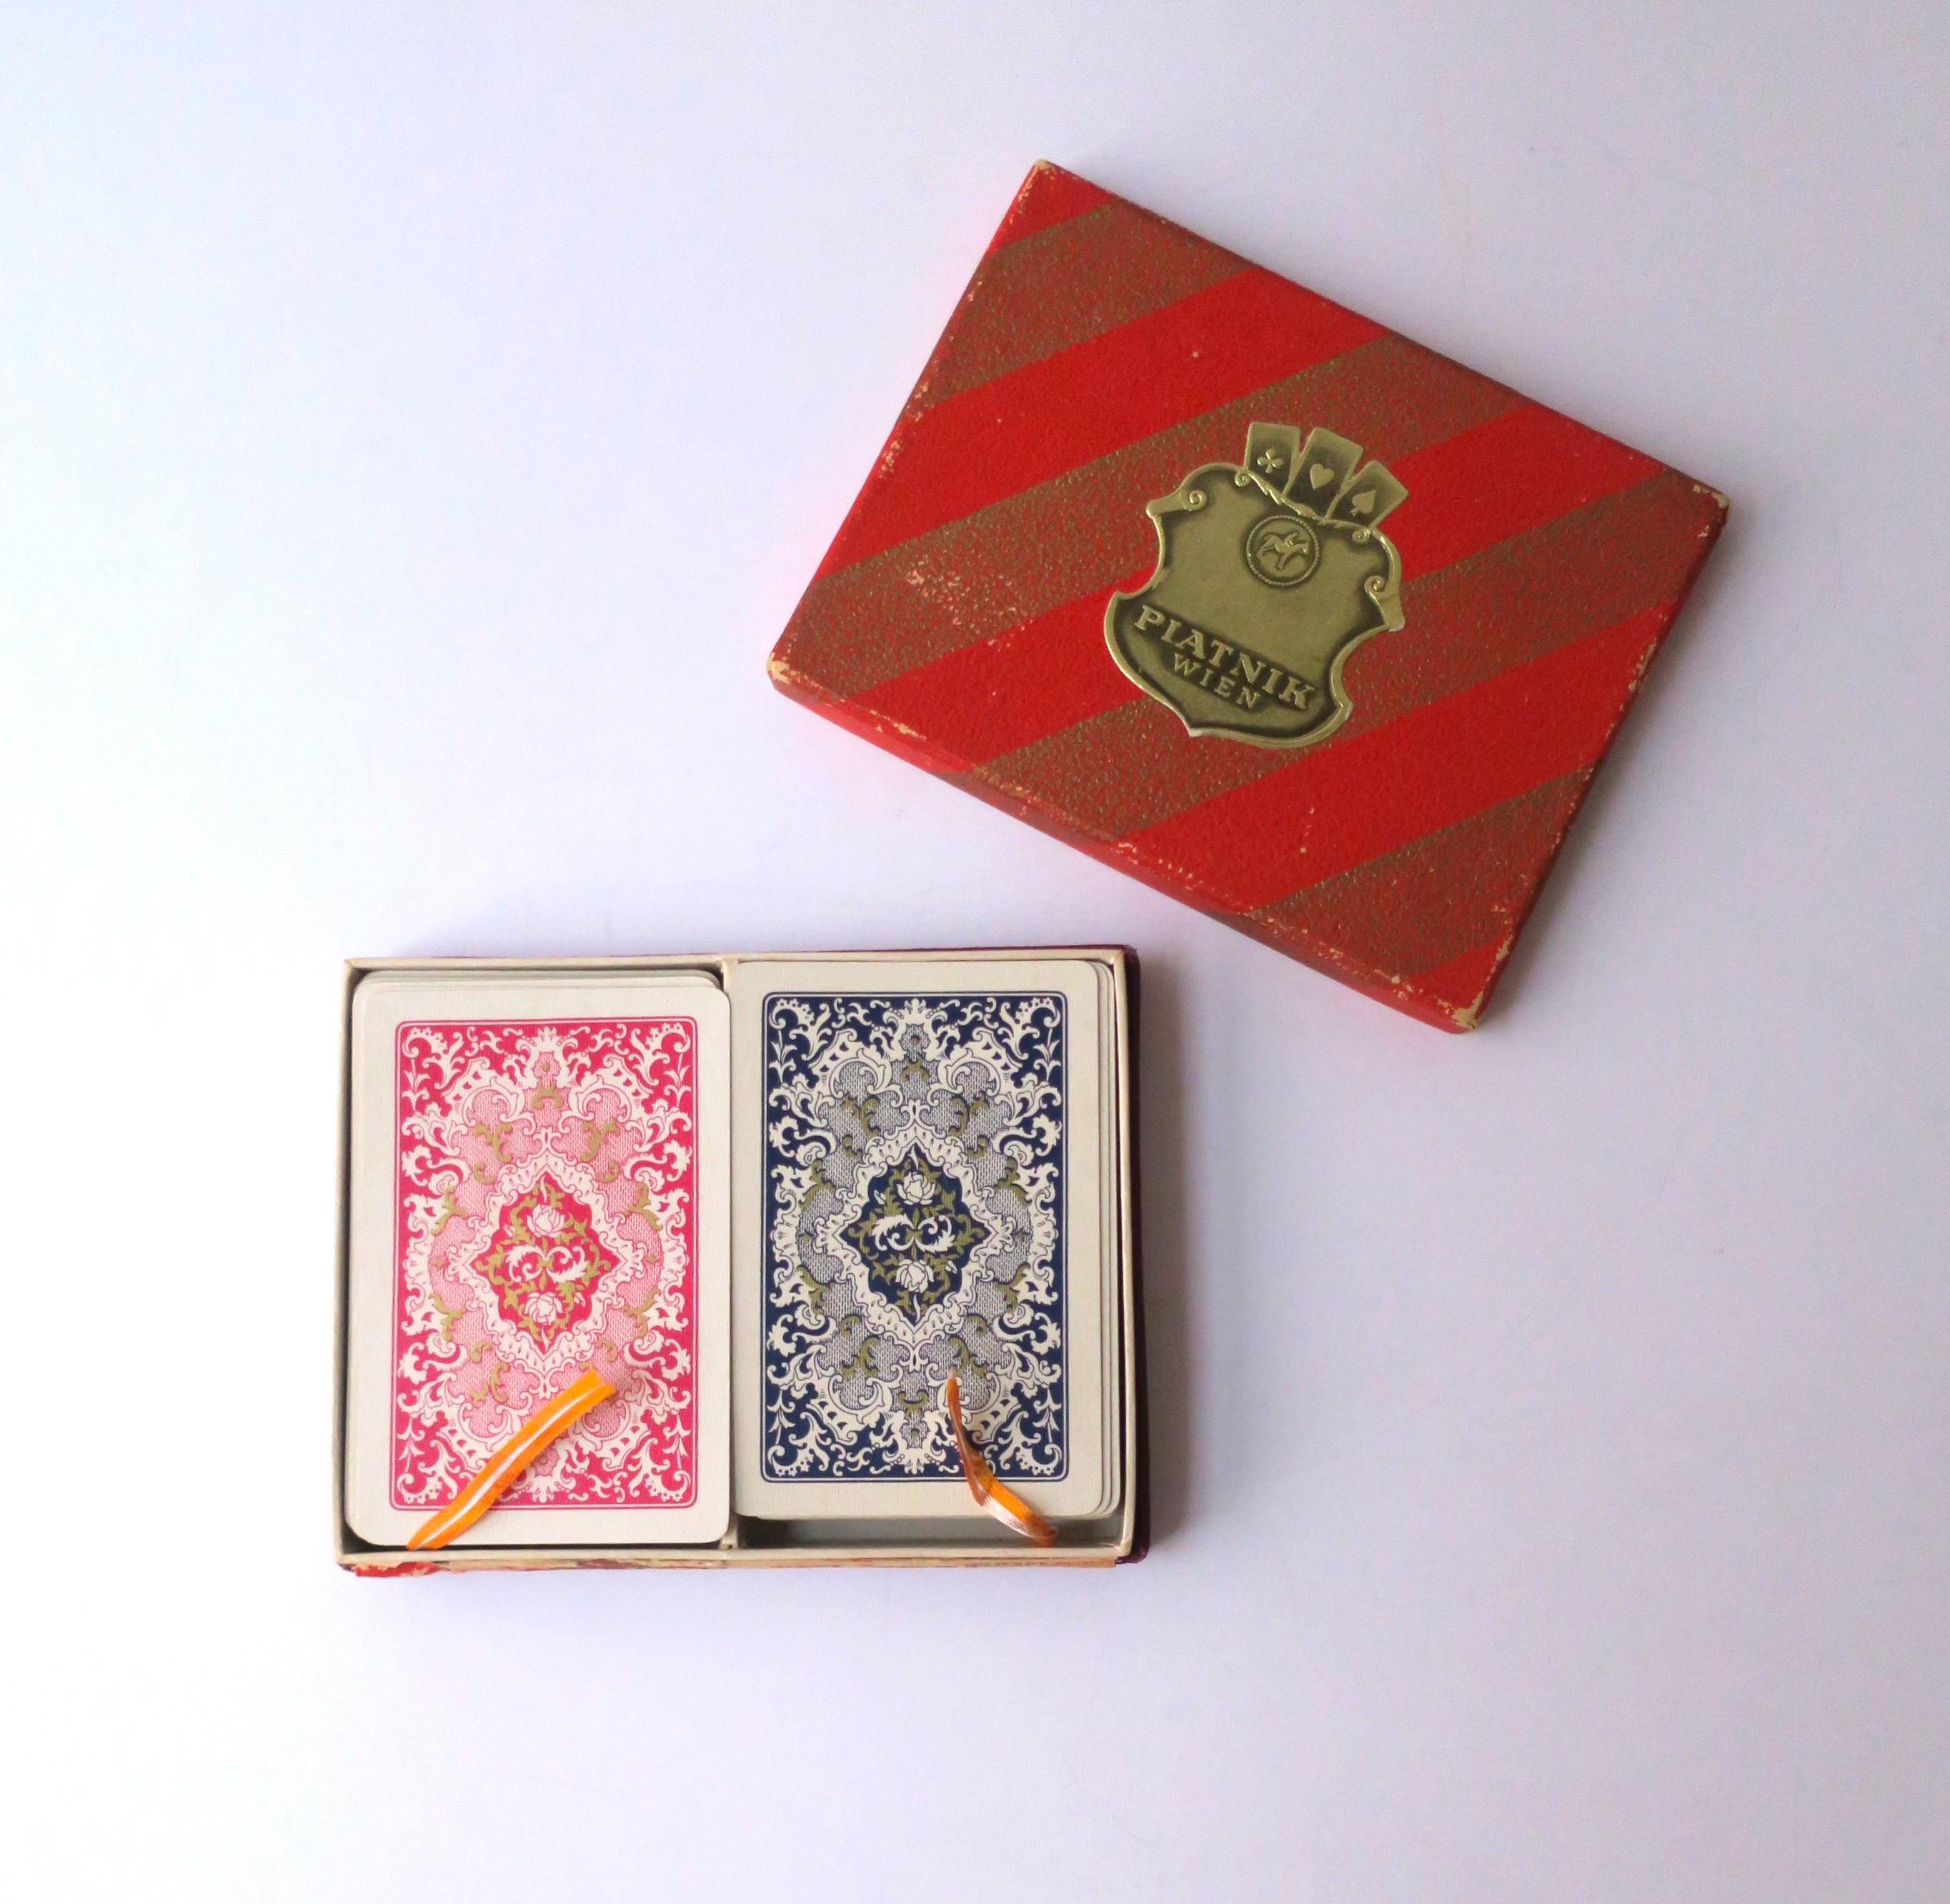 Zwei (2) komplette Spielkartensätze mit roter Originalschachtel, ca. Anfang 20. Jahrhundert, Österreich. Das Set enthält zwei komplette Spielkartensätze in einer Schachtel mit Seidenfäden zur einfachen Entnahme der Karten. Abmessungen der Box: 4,07